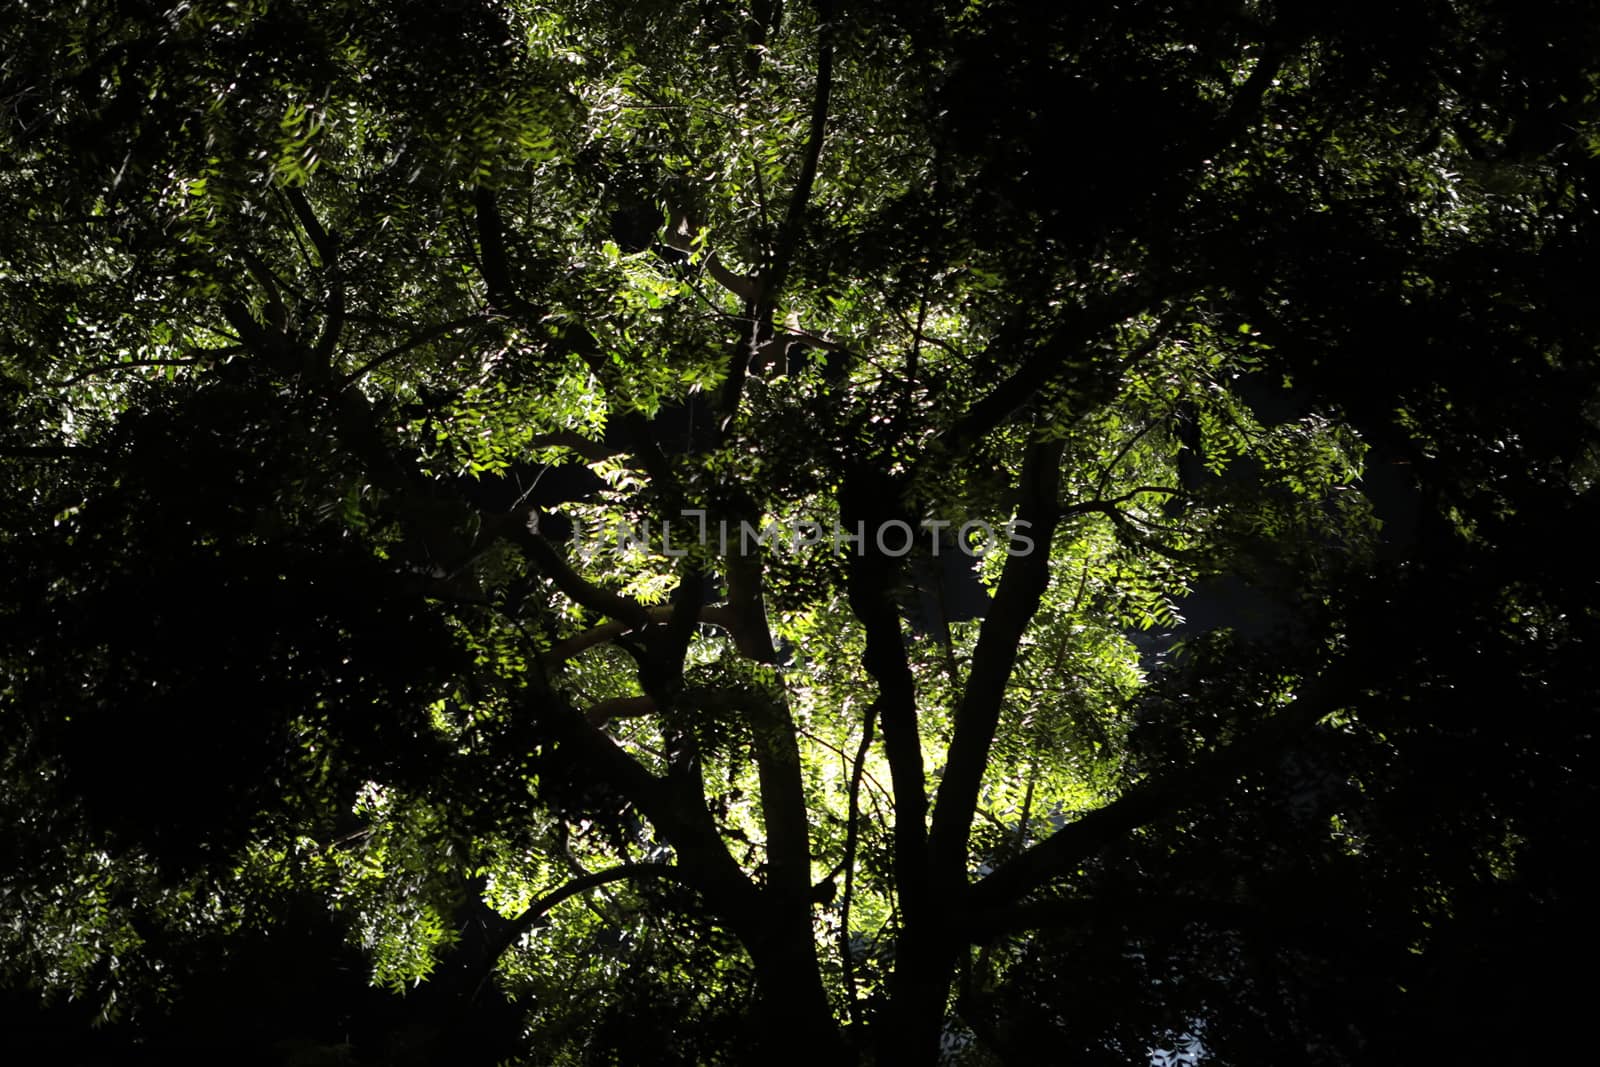 Night shot of tree by rajastills